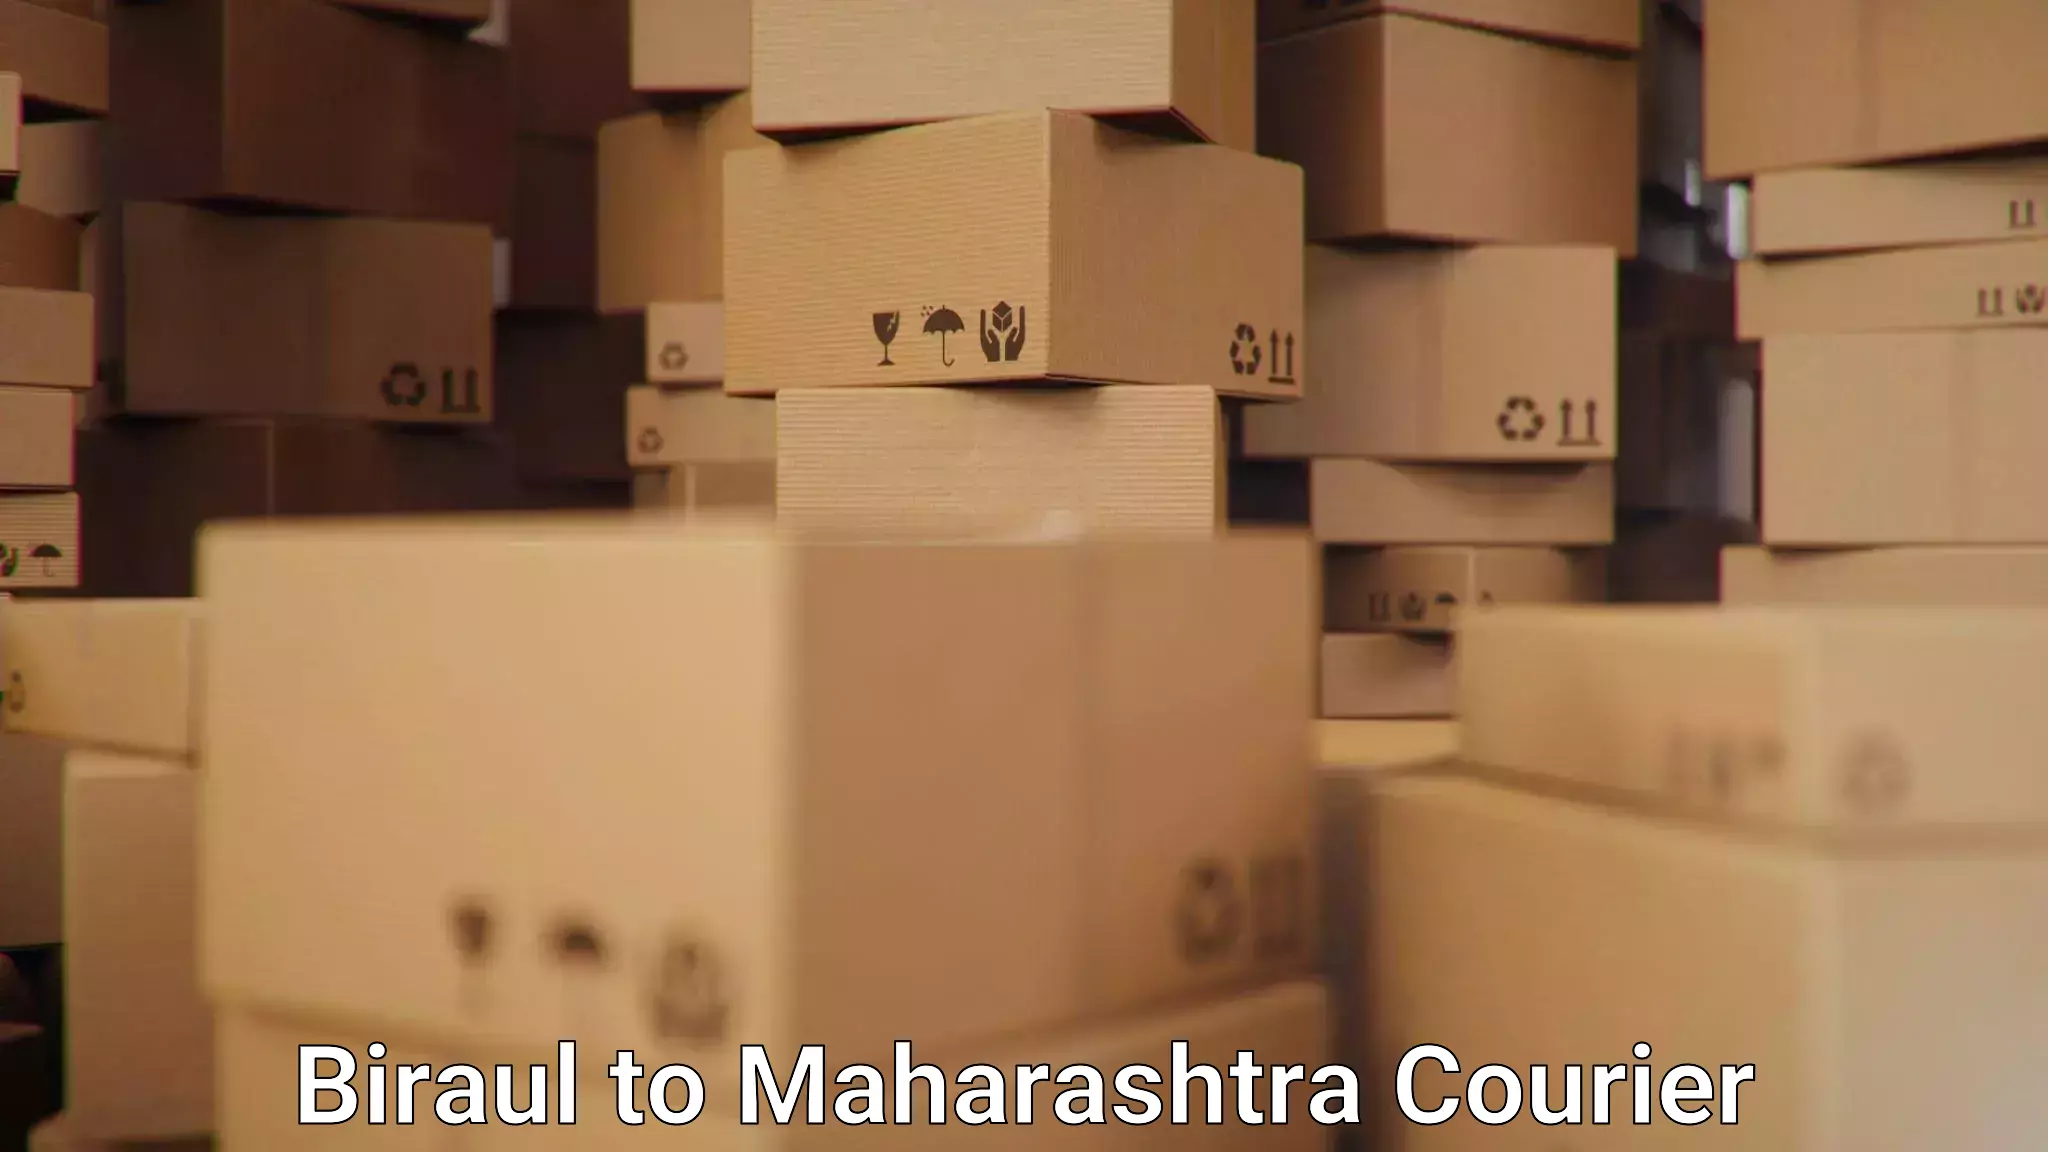 Courier service partnerships Biraul to Maharashtra